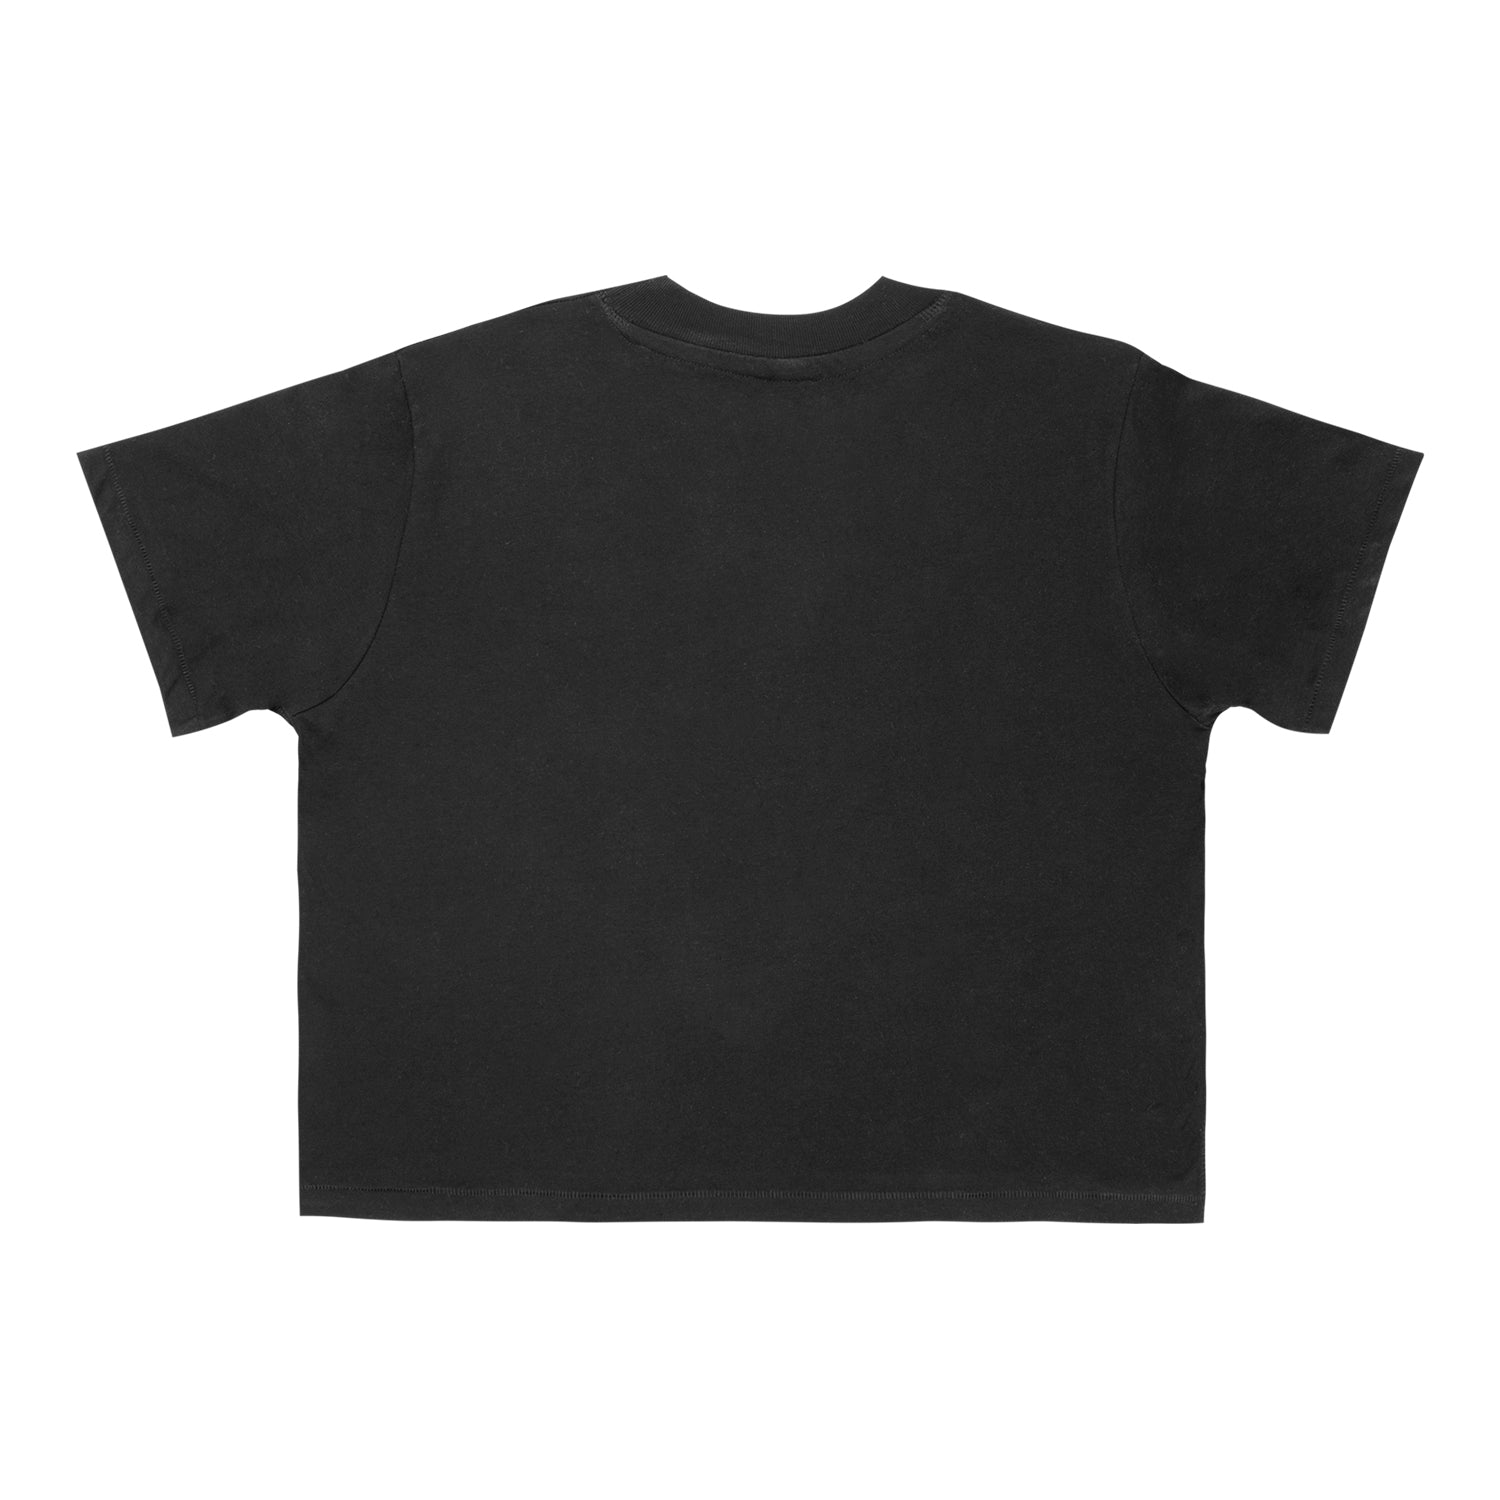 Diablo IV Petals Women's Black Cropped T-Shirt - Back View